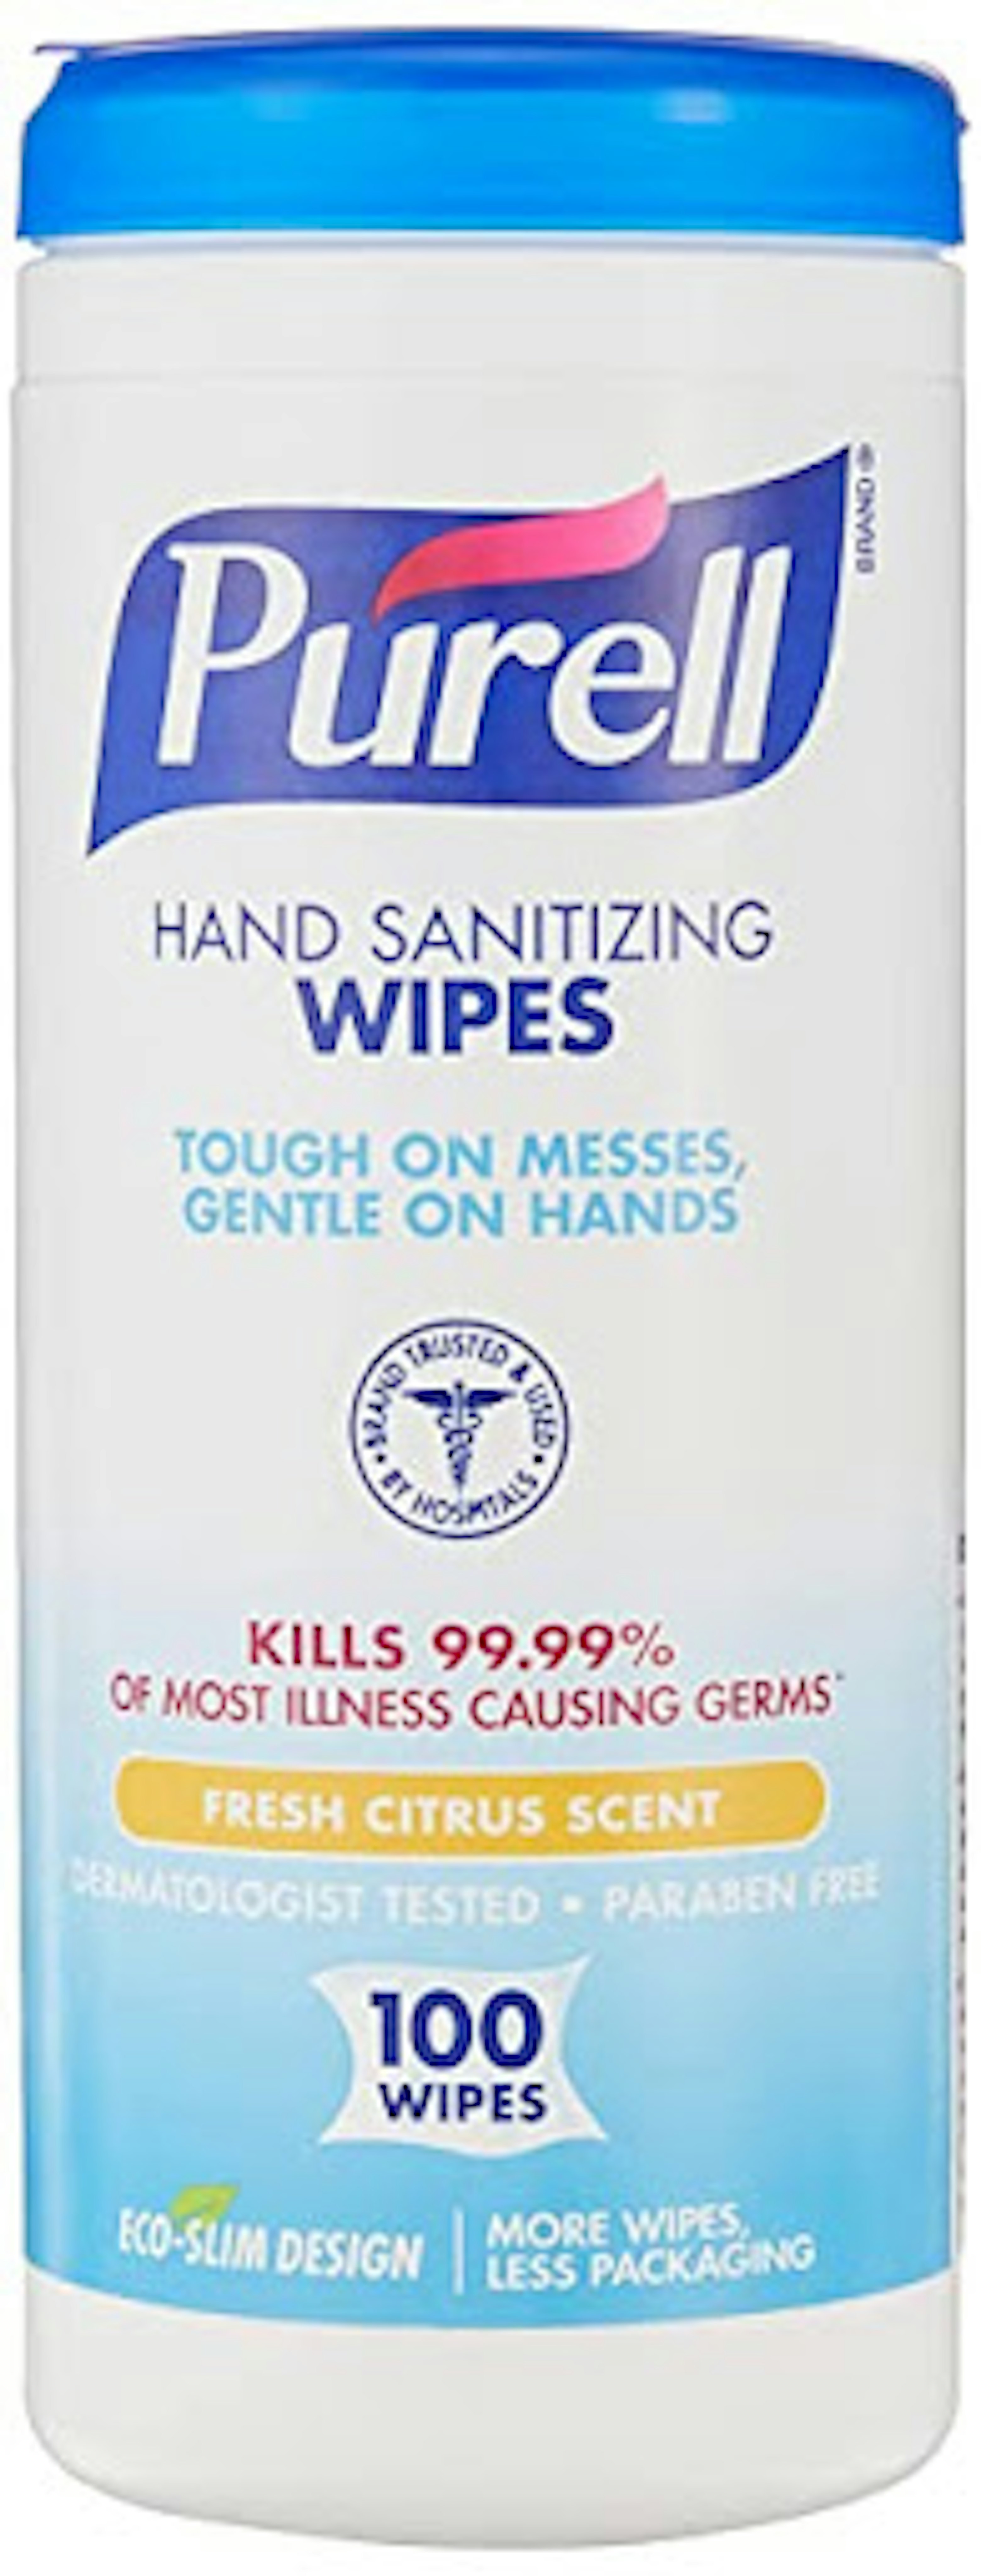 hand-sanitizing-wipes